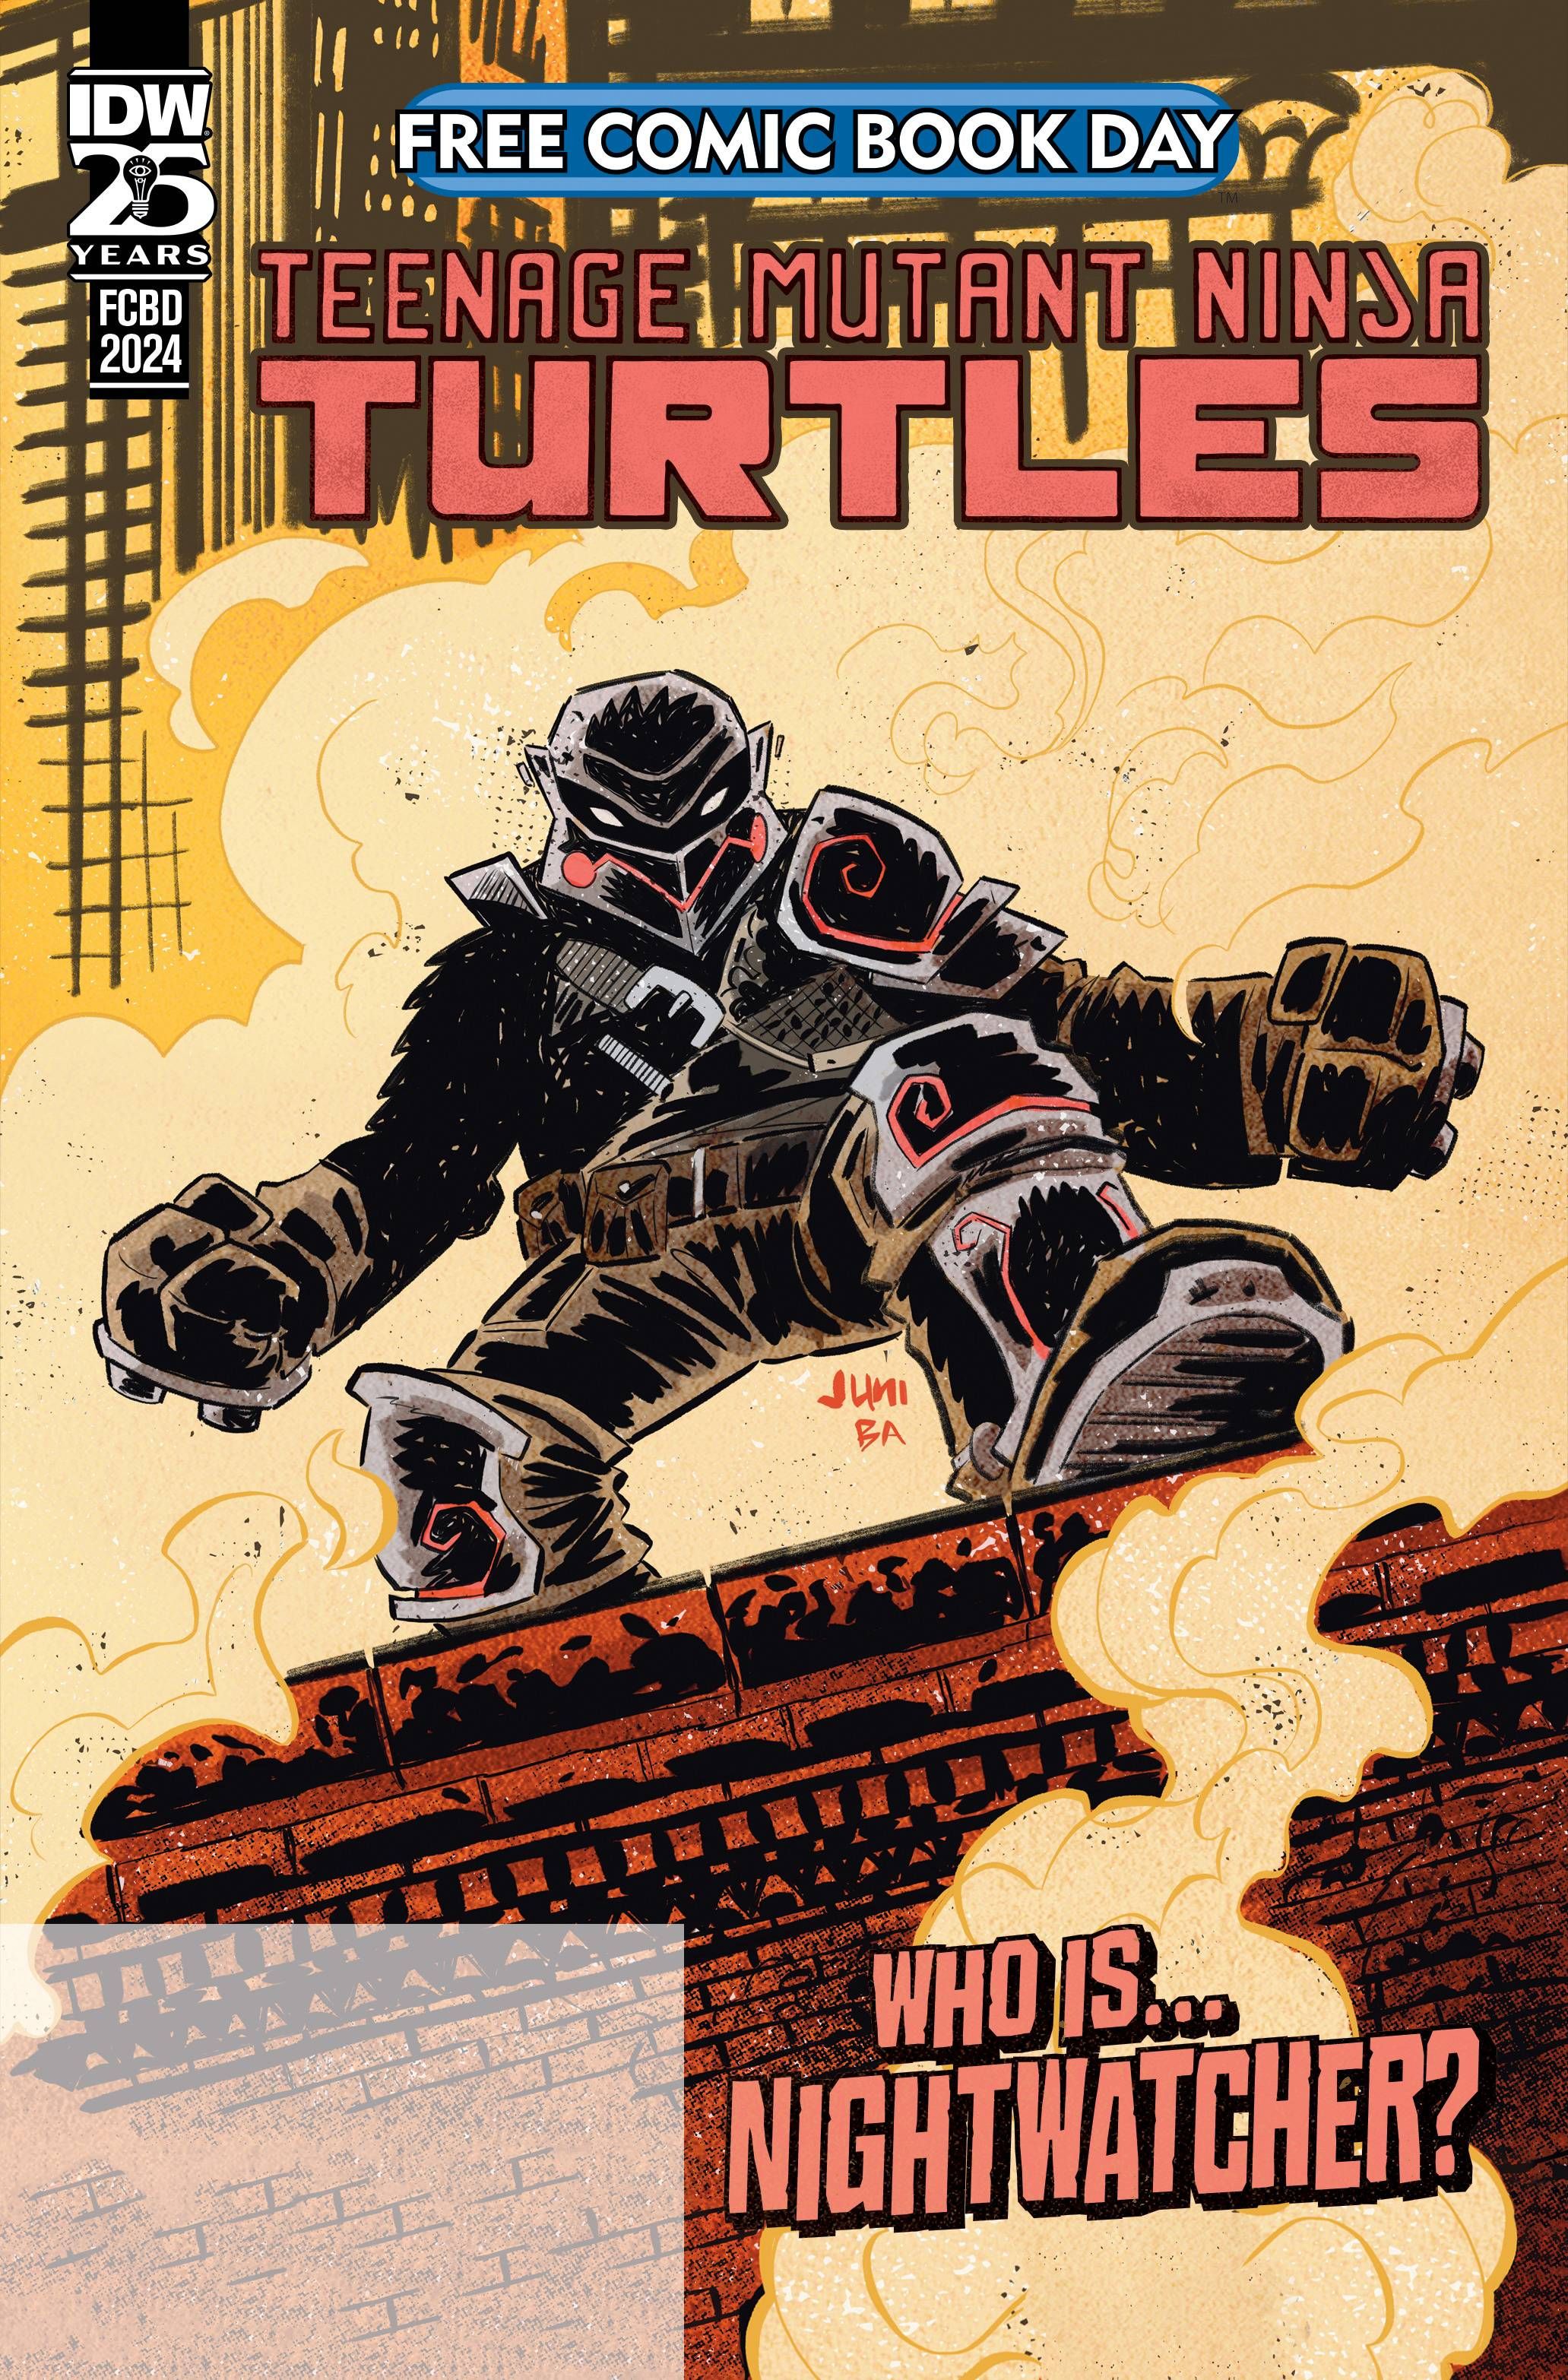 FCBD 2024 Teenage Mutant Ninja Turtles Comic